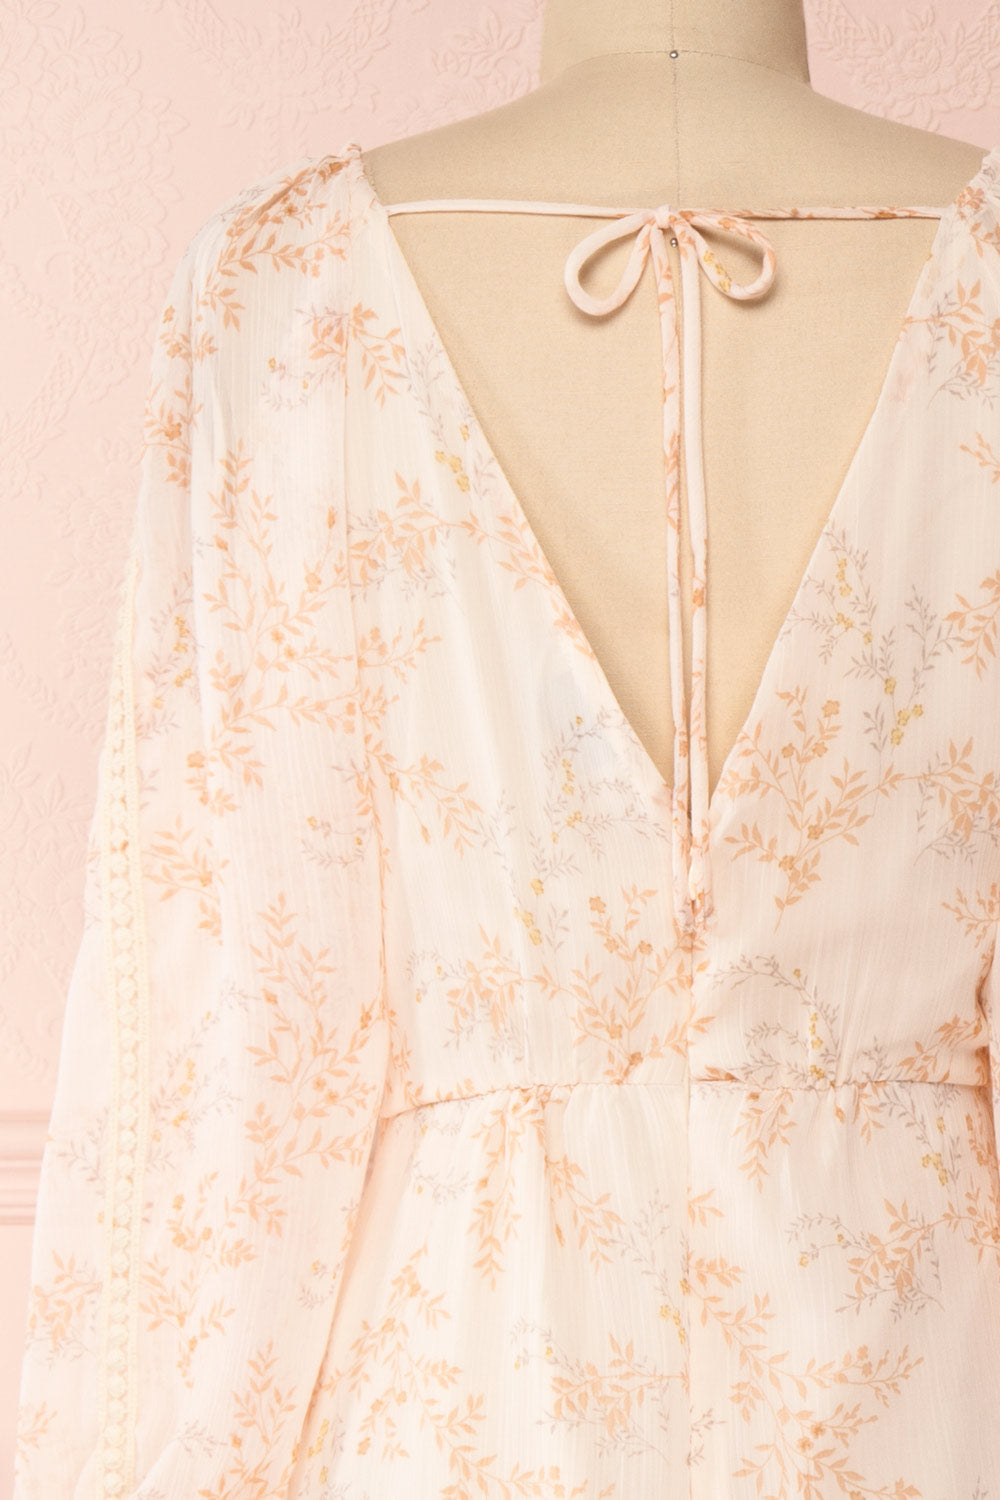 Mylene Light Pink Floral Short Dress w/ Frills | Boutique 1861 back close-up